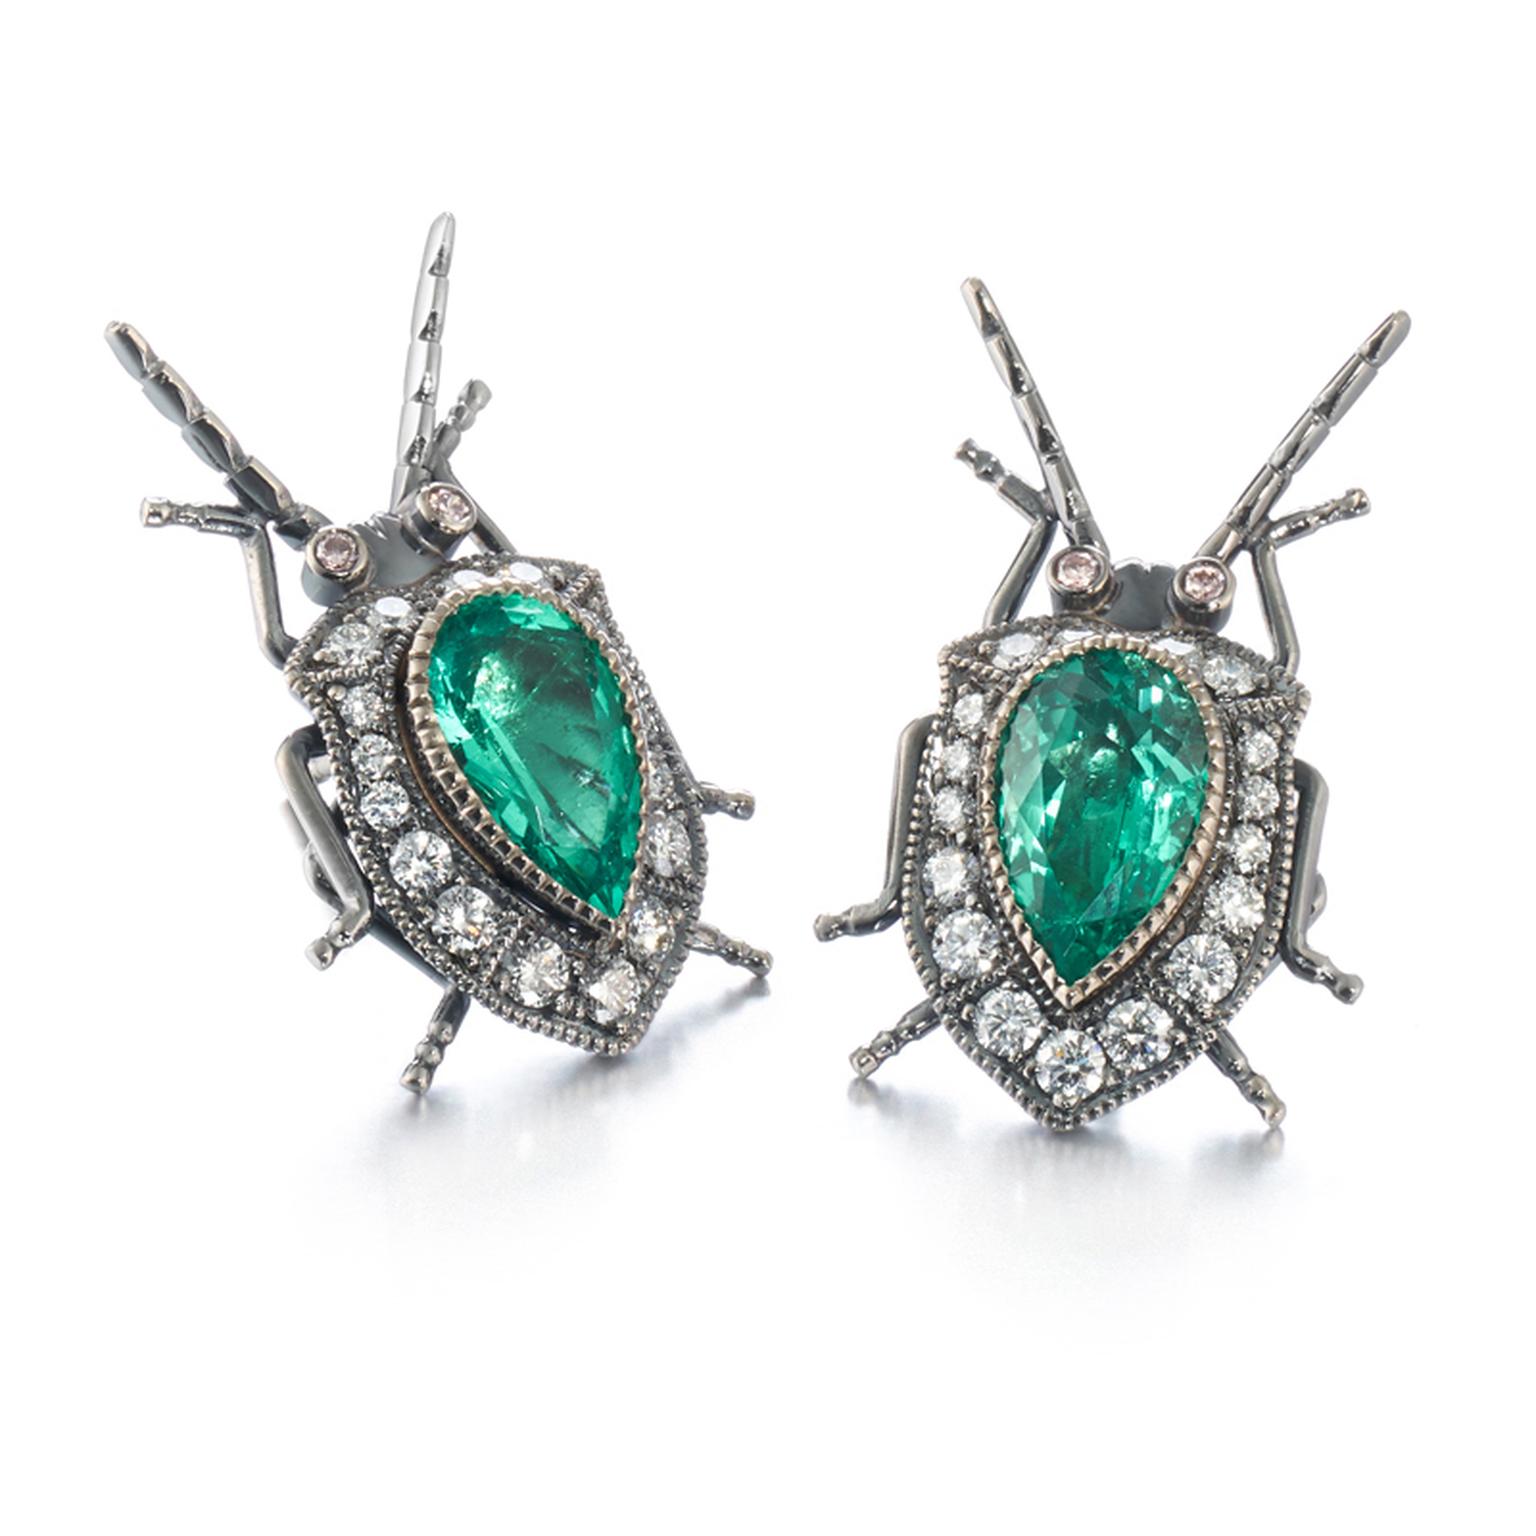 Bespoke bugs earrings by Kulmala